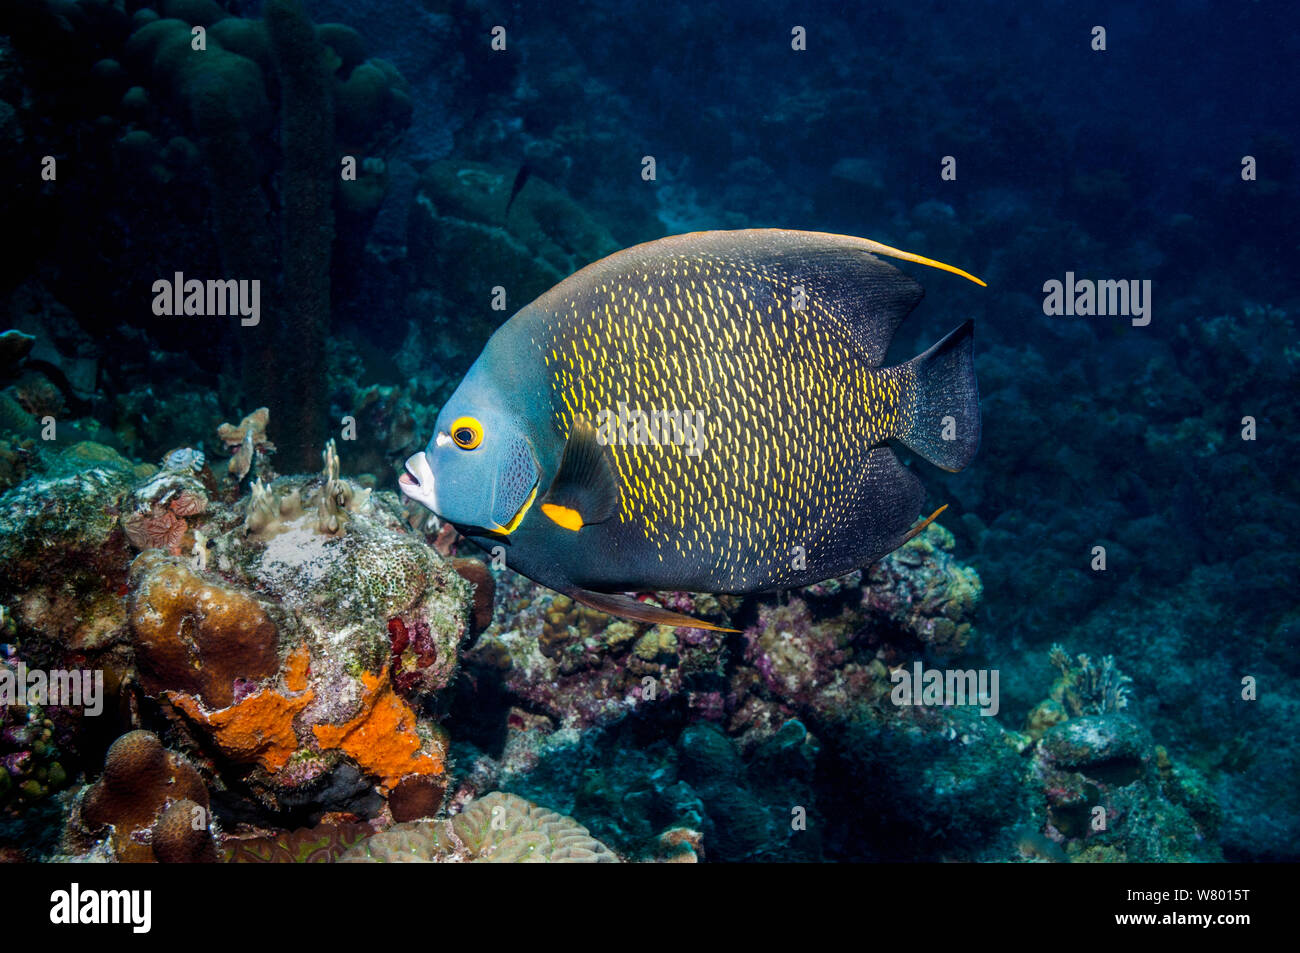 El pez ángel francés (Pomacanthus paru) en los arrecifes de coral, Bonaire, Antillas Neerlandesas, Caribe, Océano Atlántico. Foto de stock